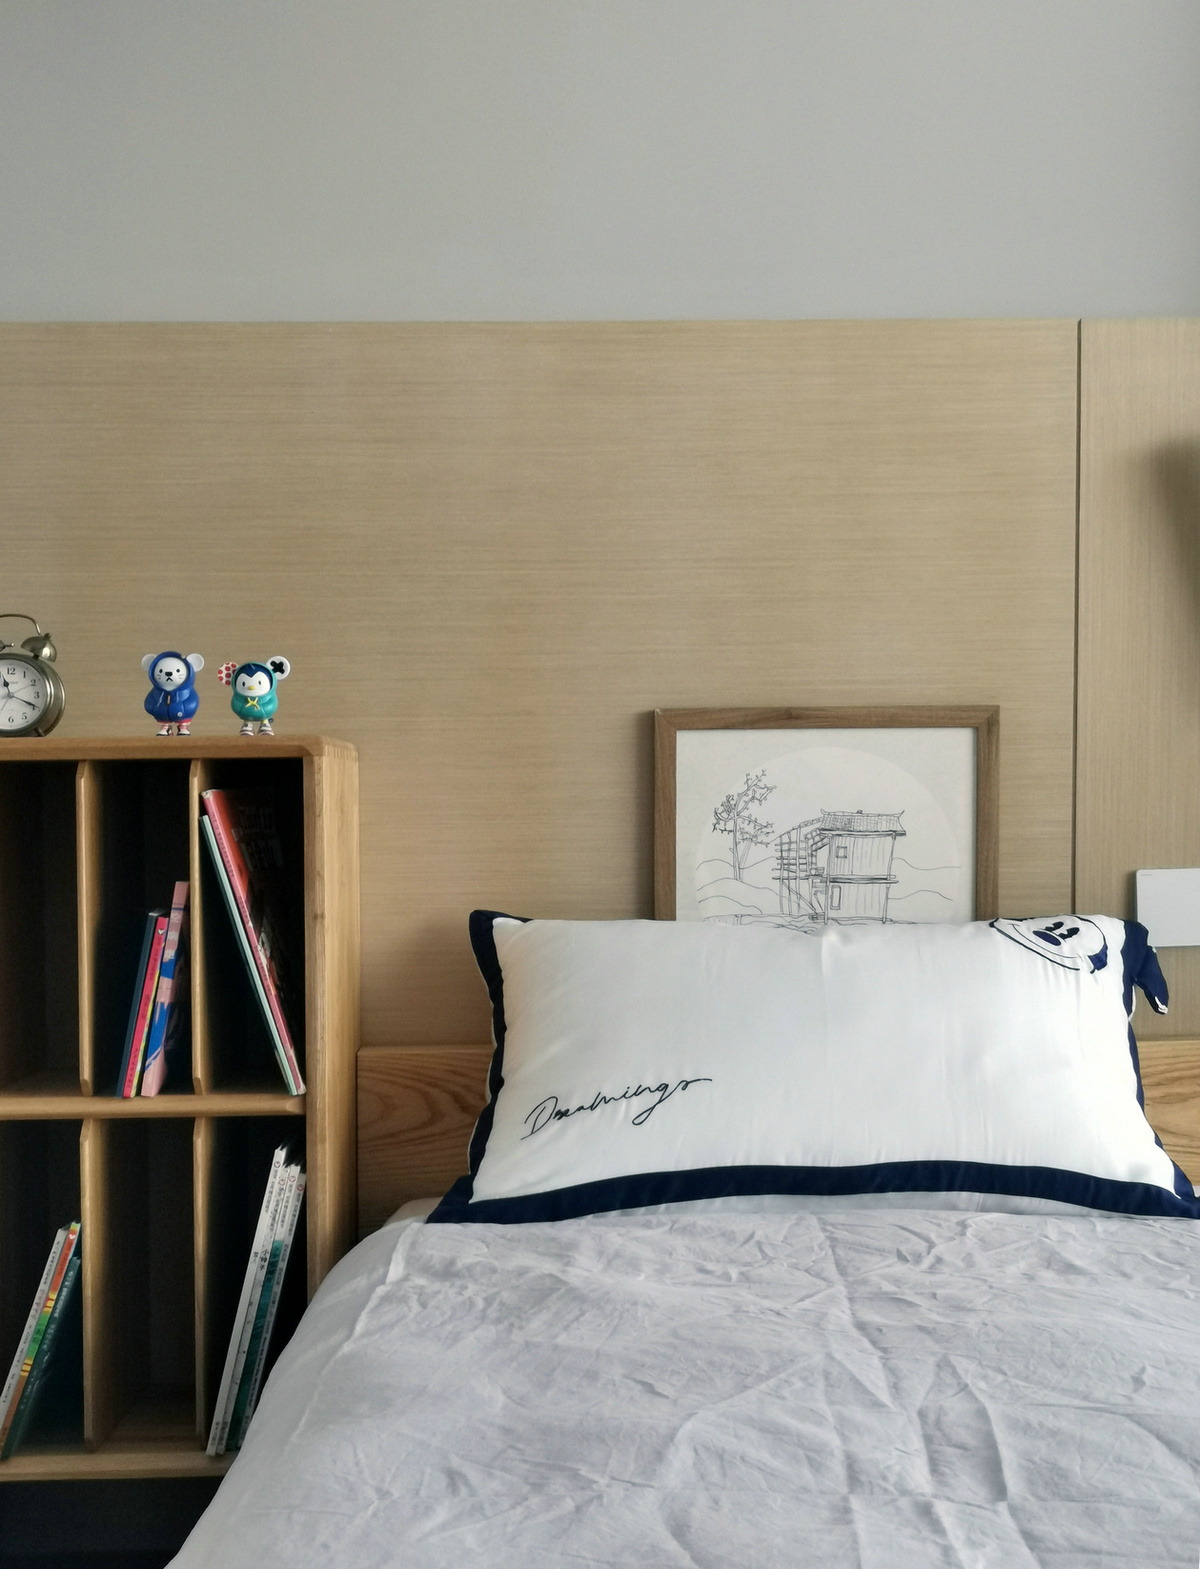 侧卧背景墙以木色为主，无床头设计符合日式简约设计的原则，收纳柜让空间的层次更加丰富。